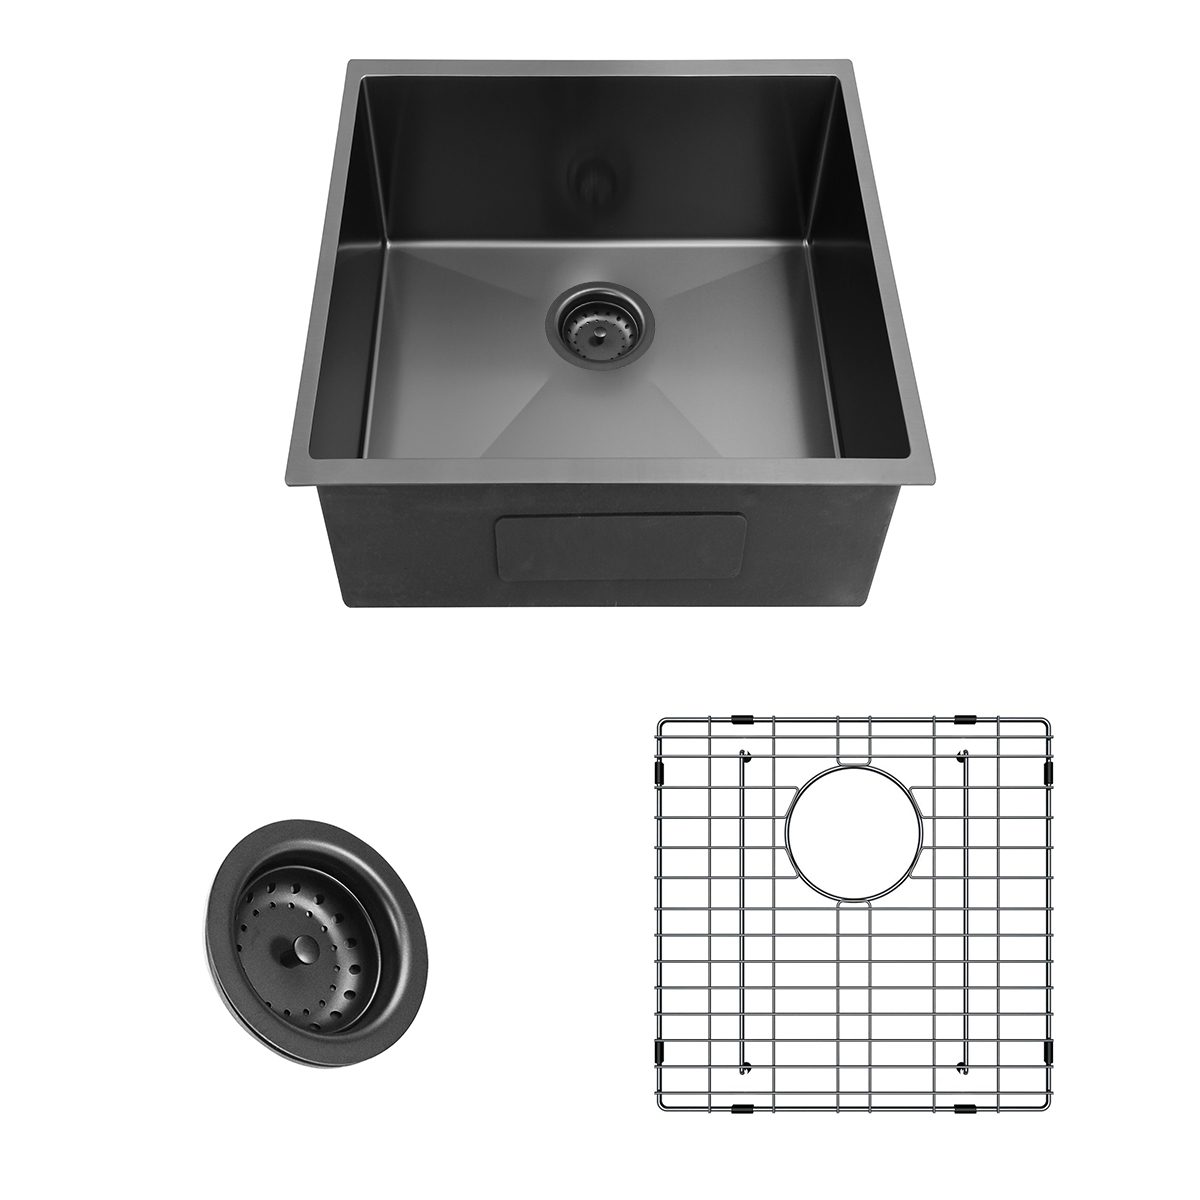 17" x 17" Stainless Steel Handmade Undermount Gunmetal Black Nano Kitchen Sink